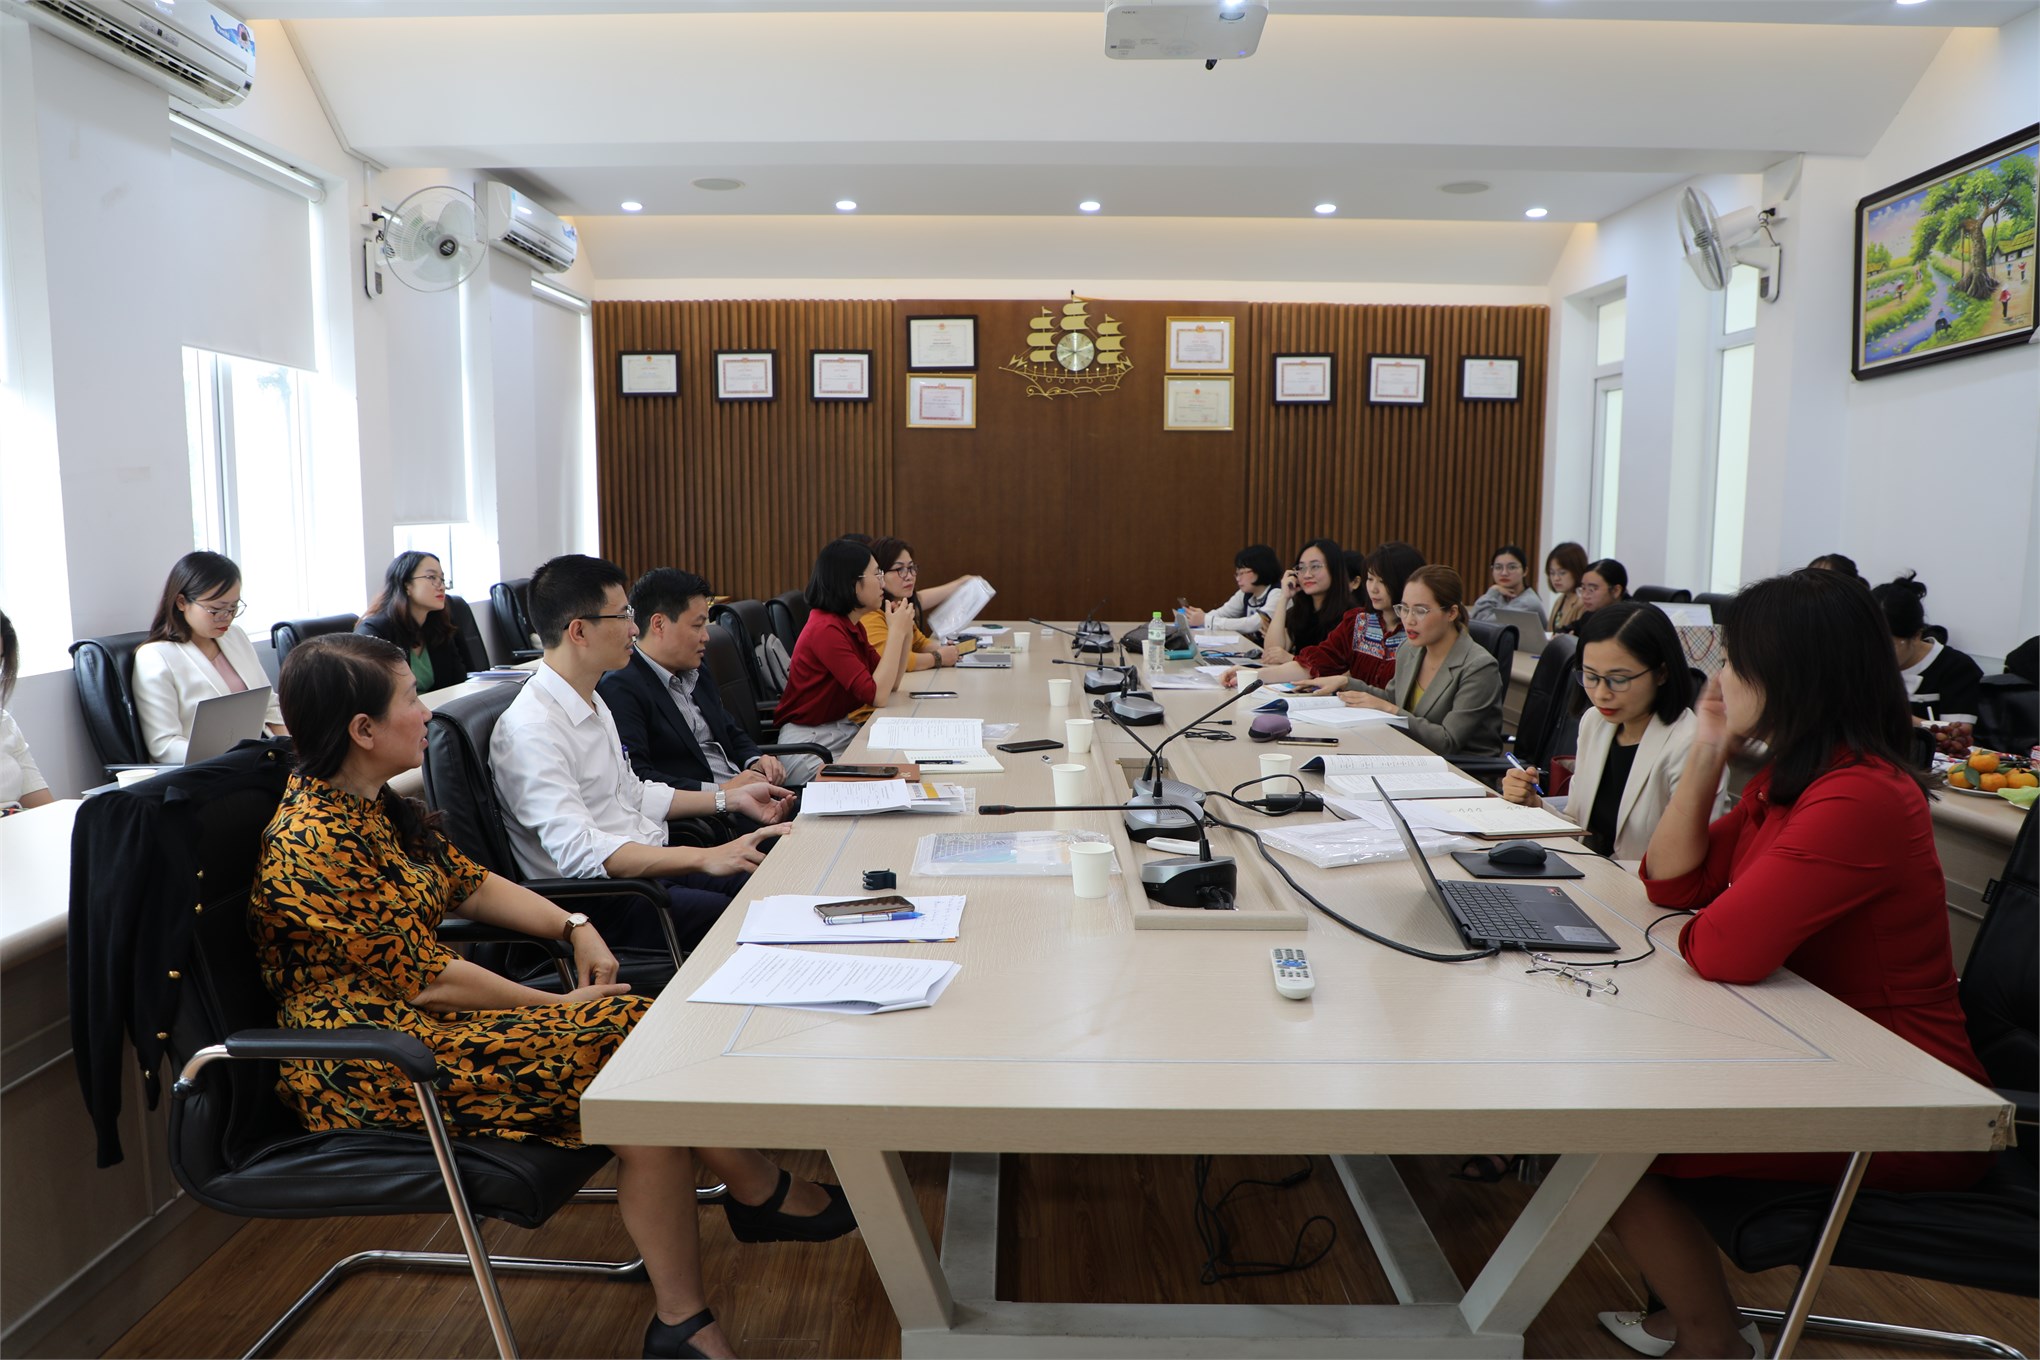 Trường Đại học Công nghiệp Hà Nội tổ chức Hội nghị Khoa học HaUI lần thứ VI